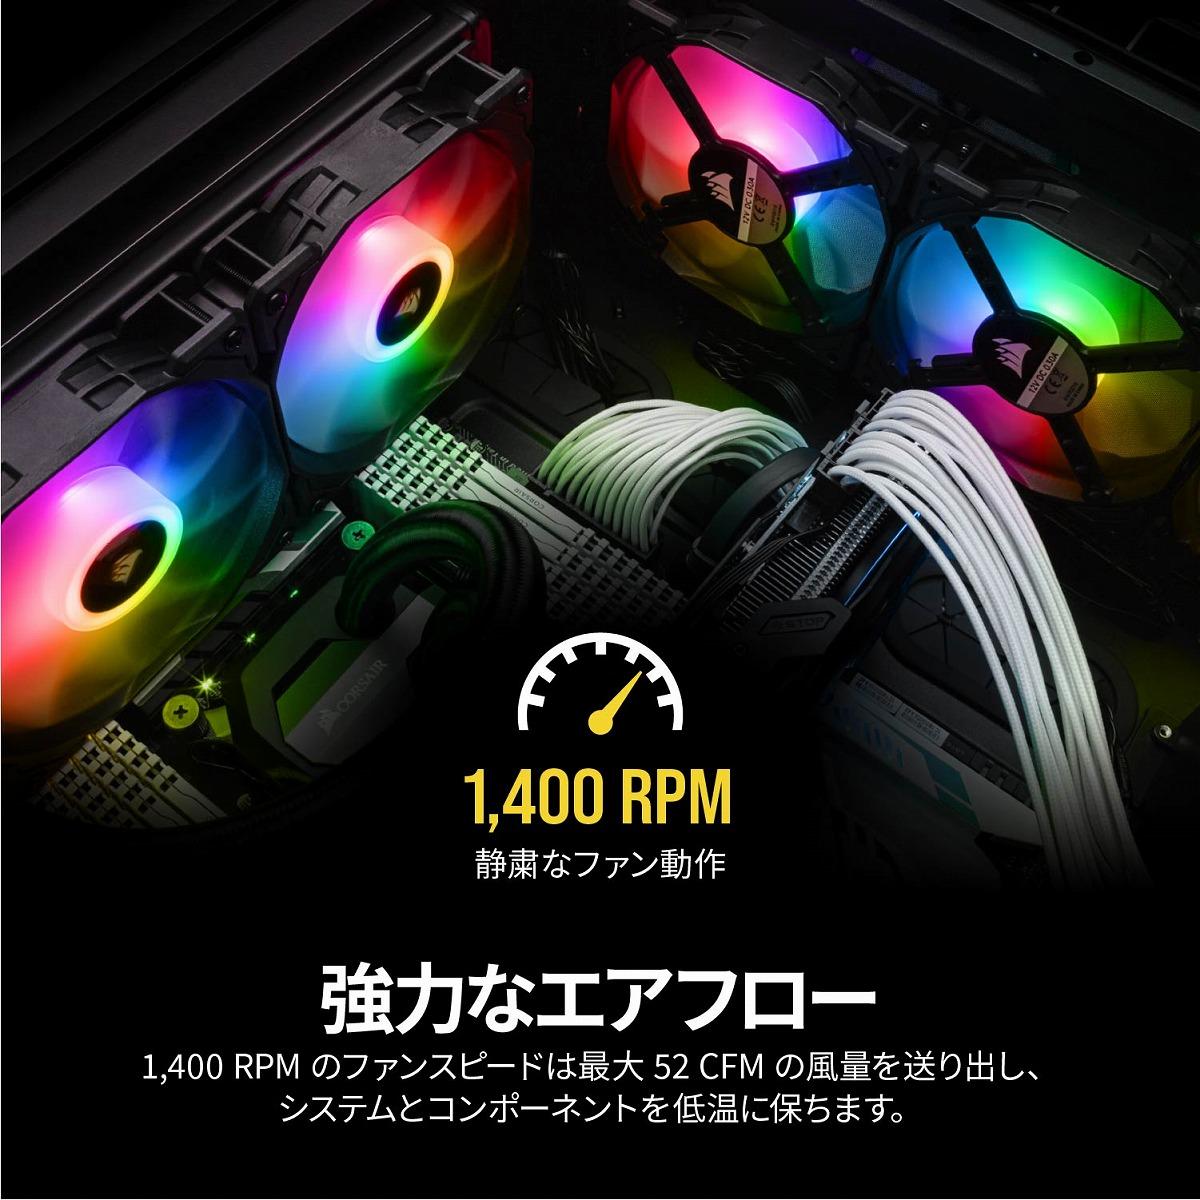 アドレッサブルRGB搭載 120mm RGB LEDファン「iCUE SP120 RGB PRO」 - ツクモネットショップblog